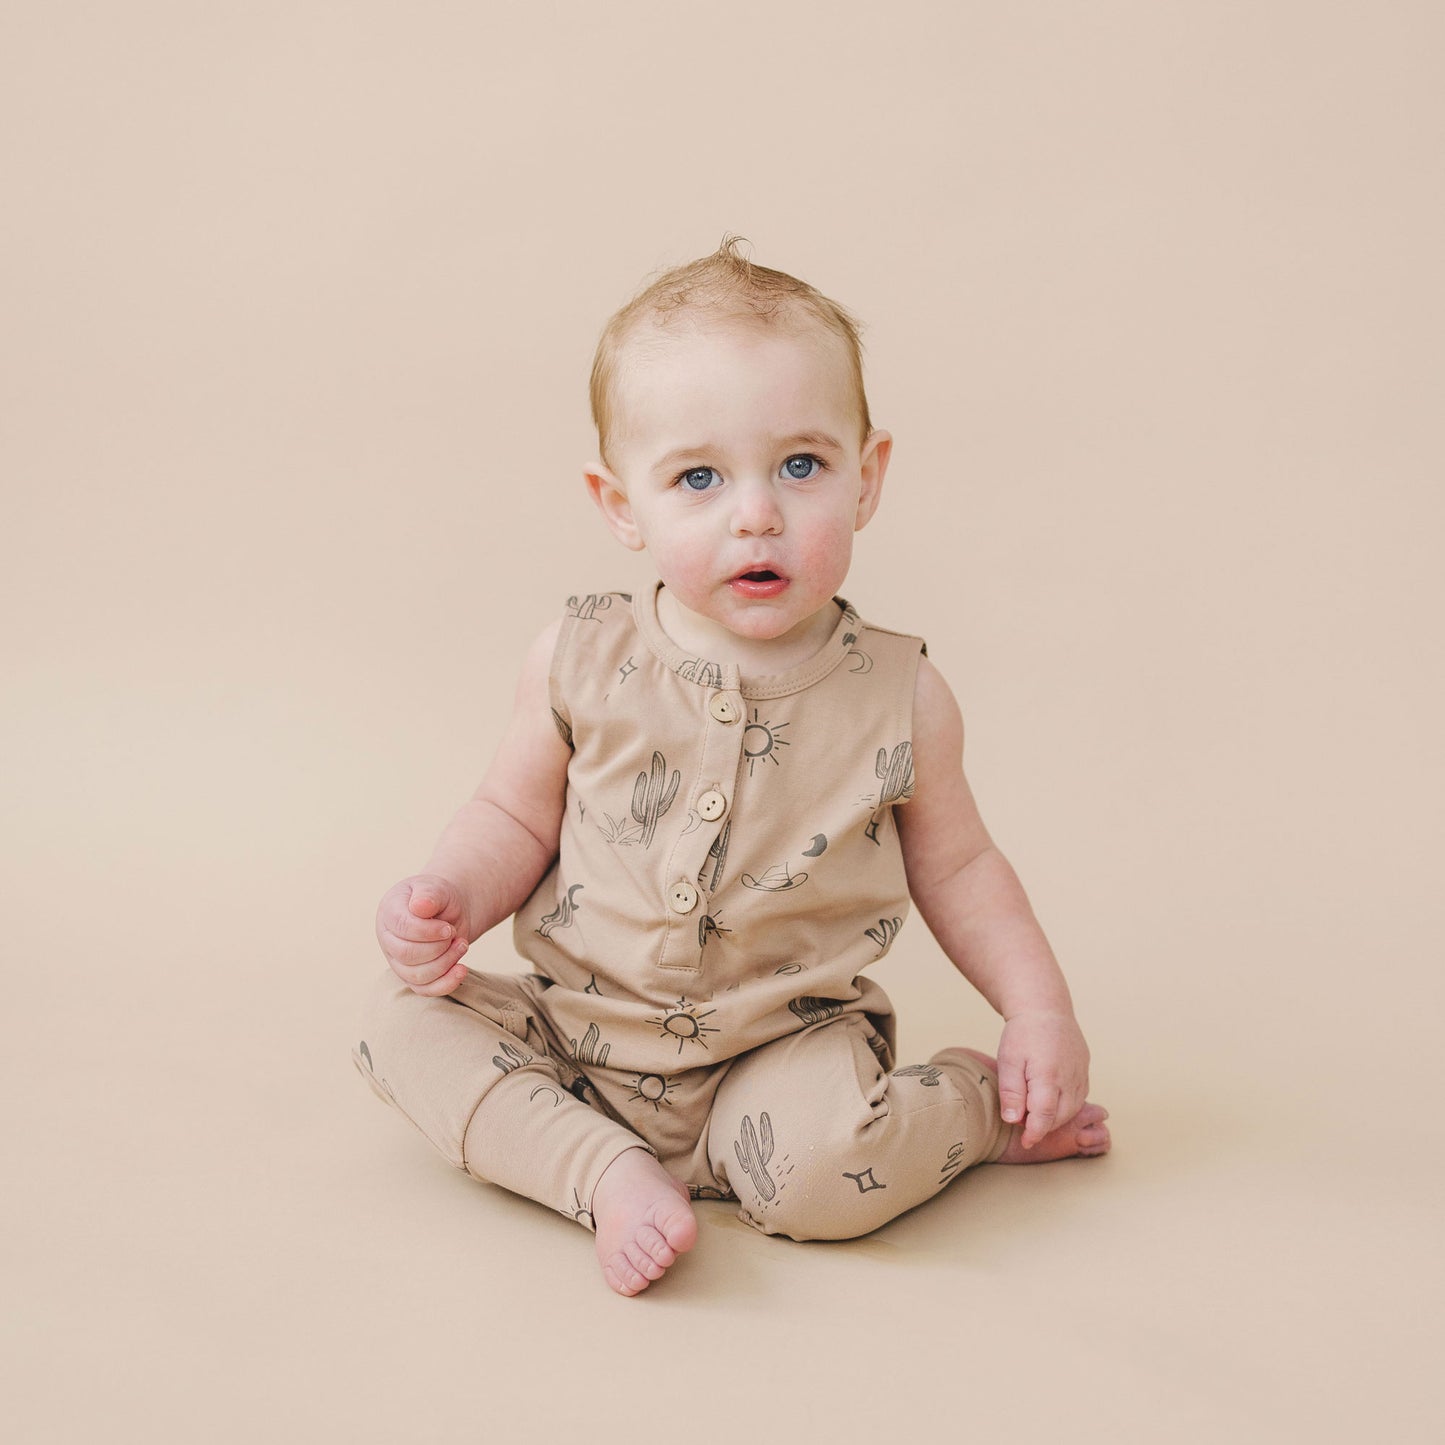 Toddler wearing Mebie Baby Tank Romper - Western